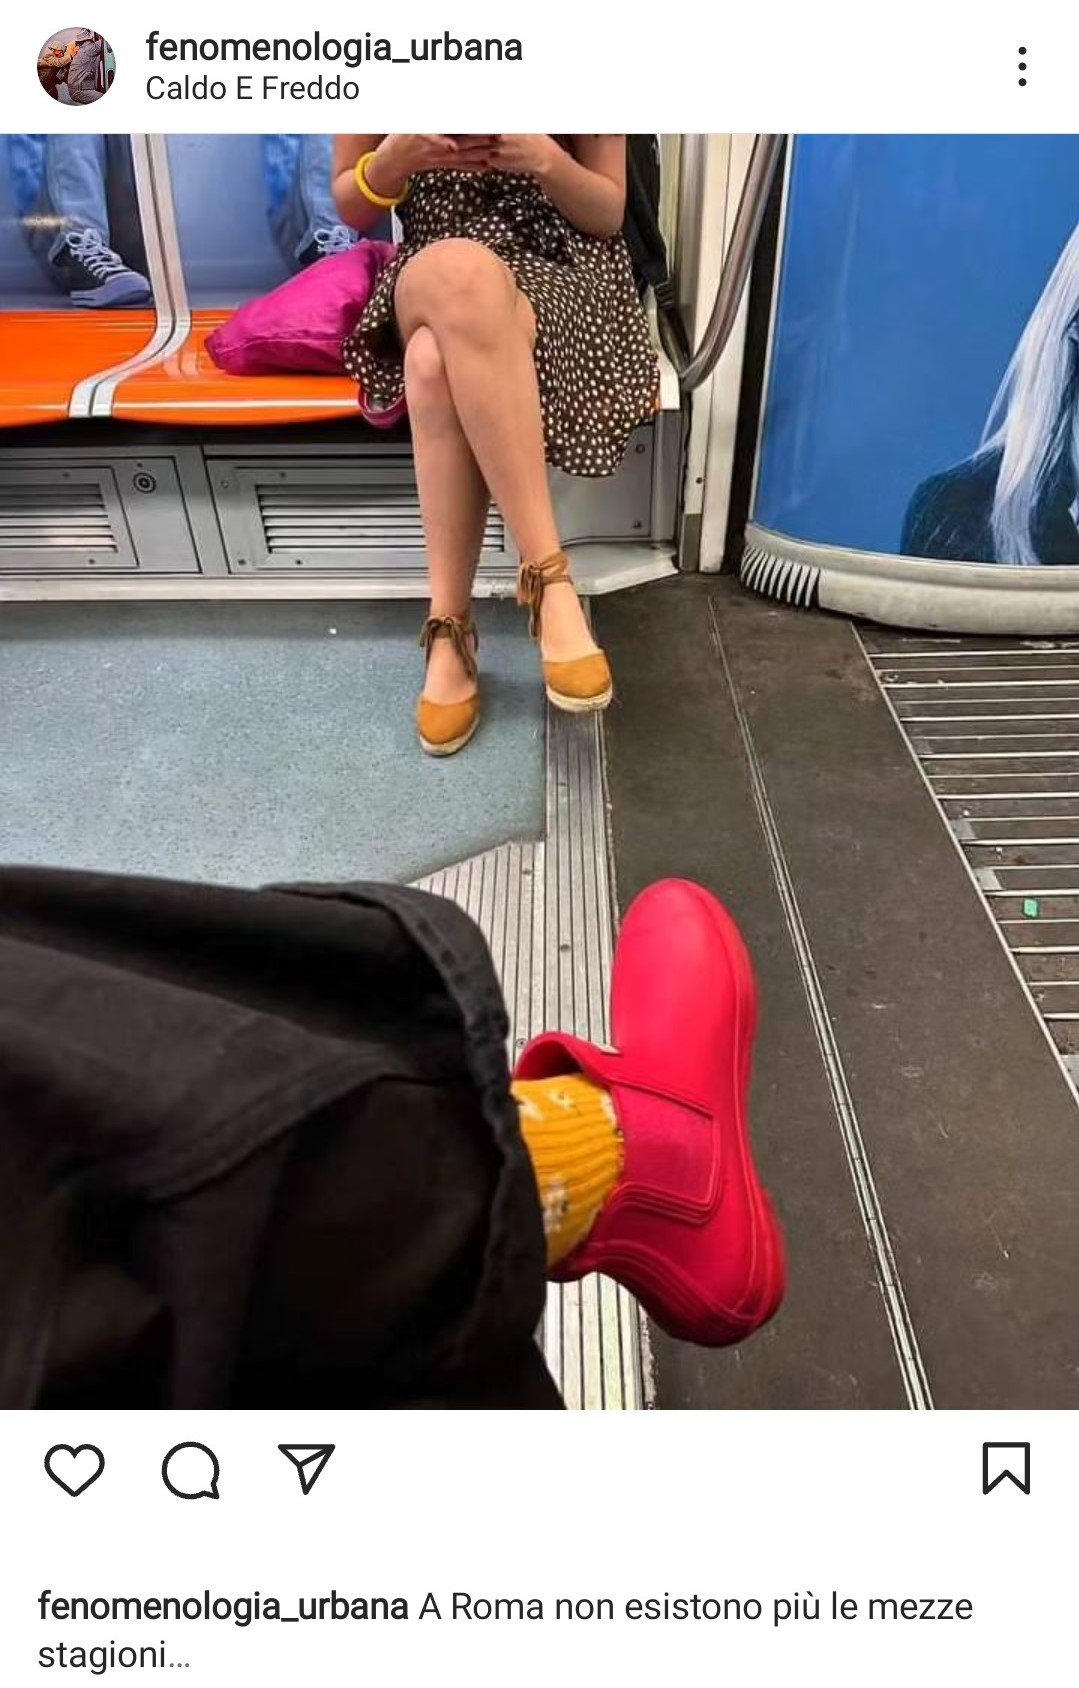 Dalla metropolitana di Roma, una segnalazione esilarante: una donna con gli stivali e l'altra con i sandali. Fonte: fenomenologia_urbana - Instagram